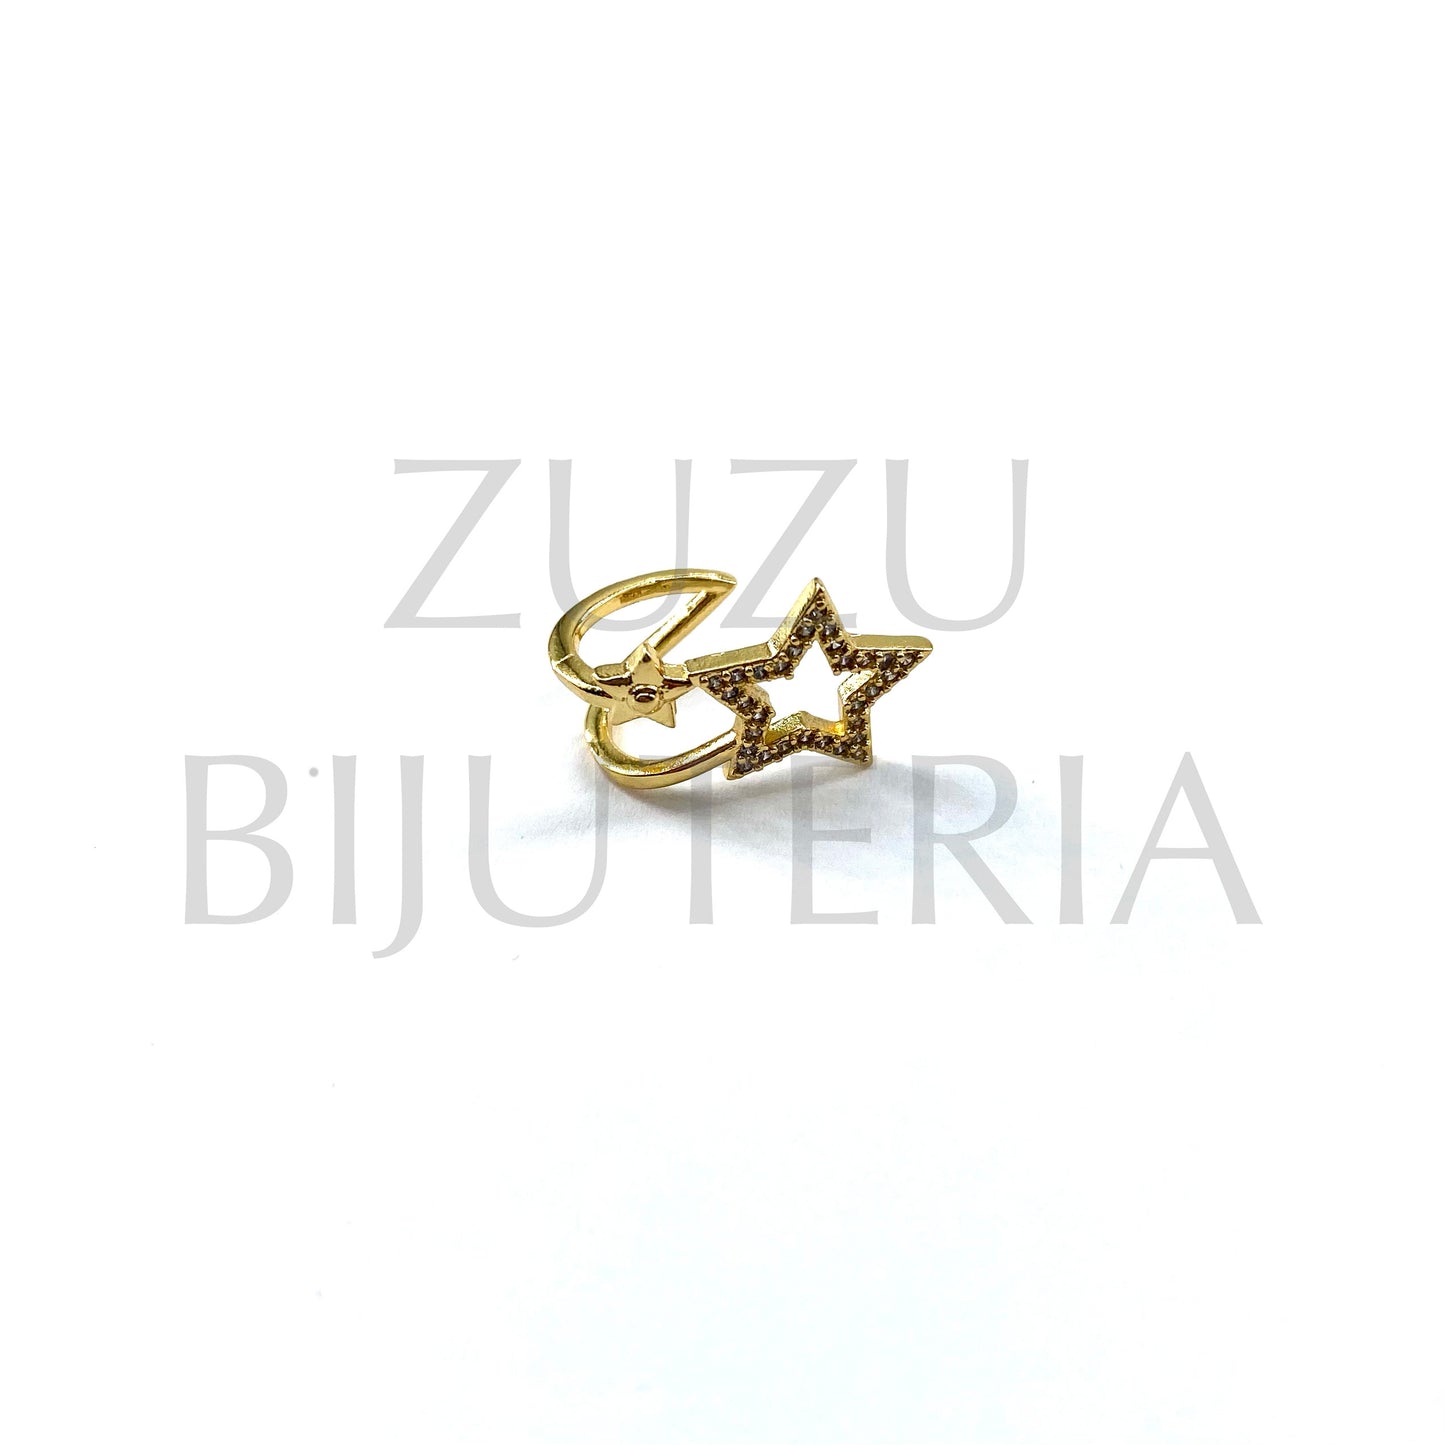 Anilha Dourado com Zirconias (Ajustável) - Latão